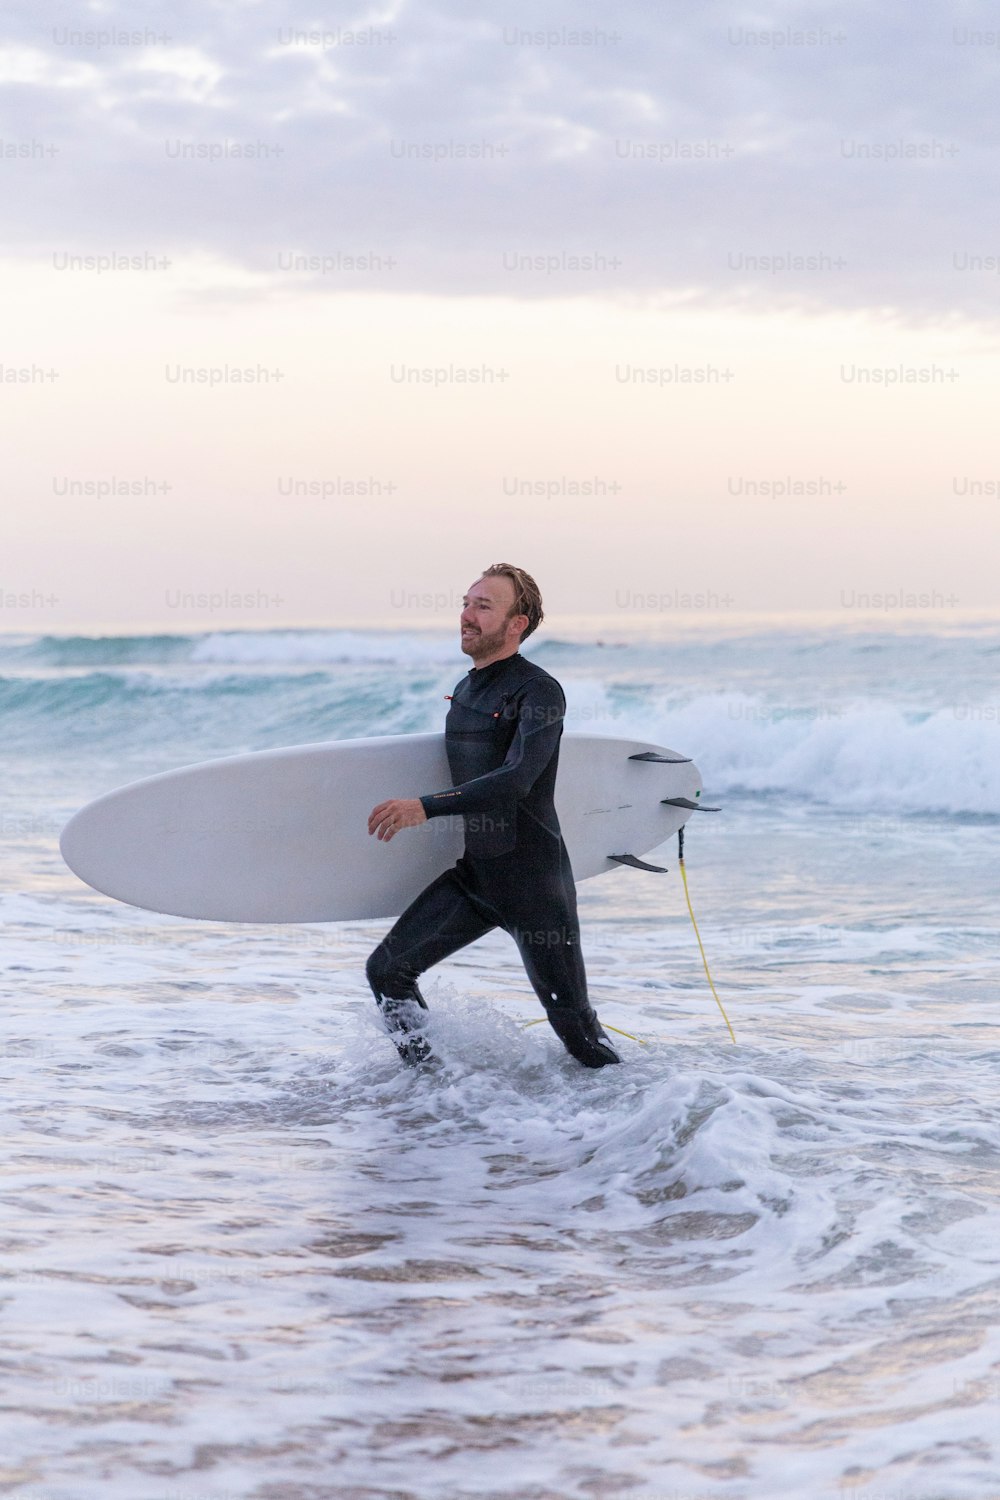 잠수복을 입은 남자가 서핑보드를 바다로 들고 있다